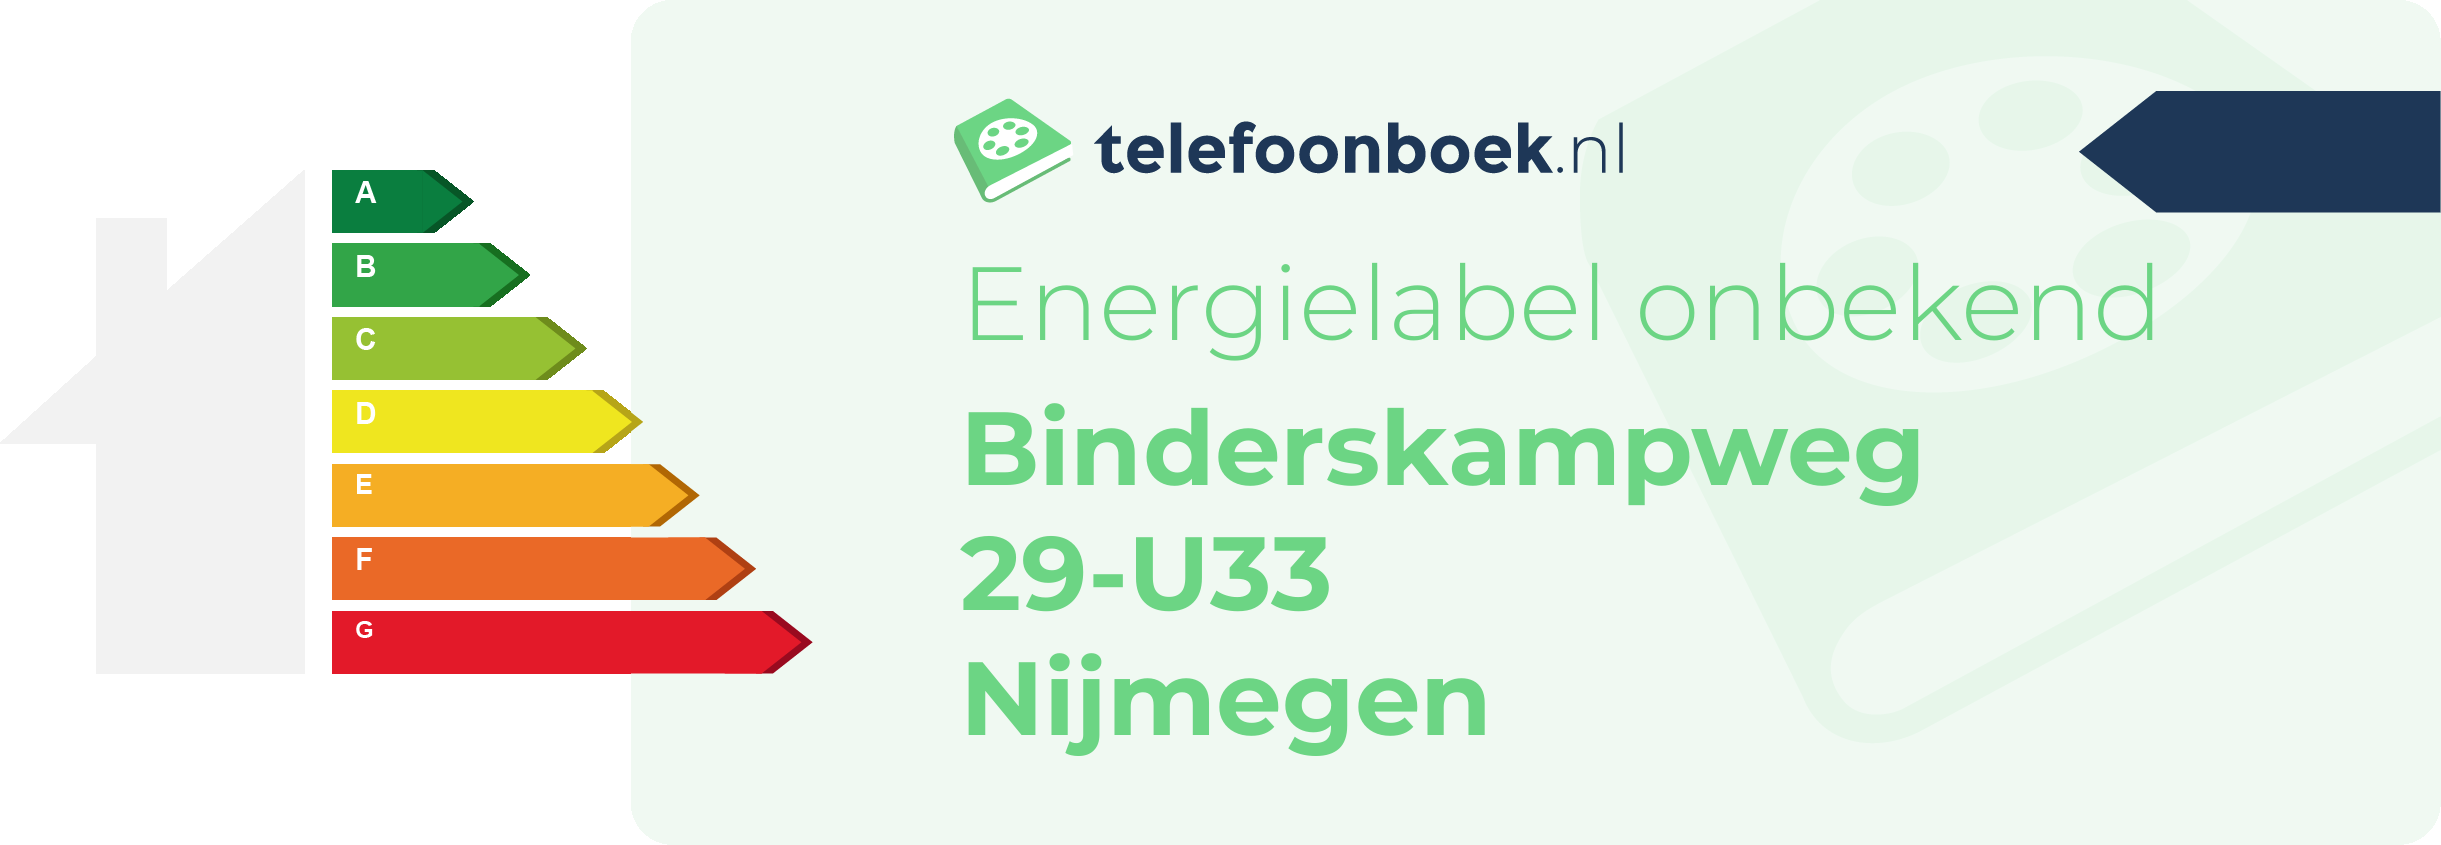 Energielabel Binderskampweg 29-U33 Nijmegen